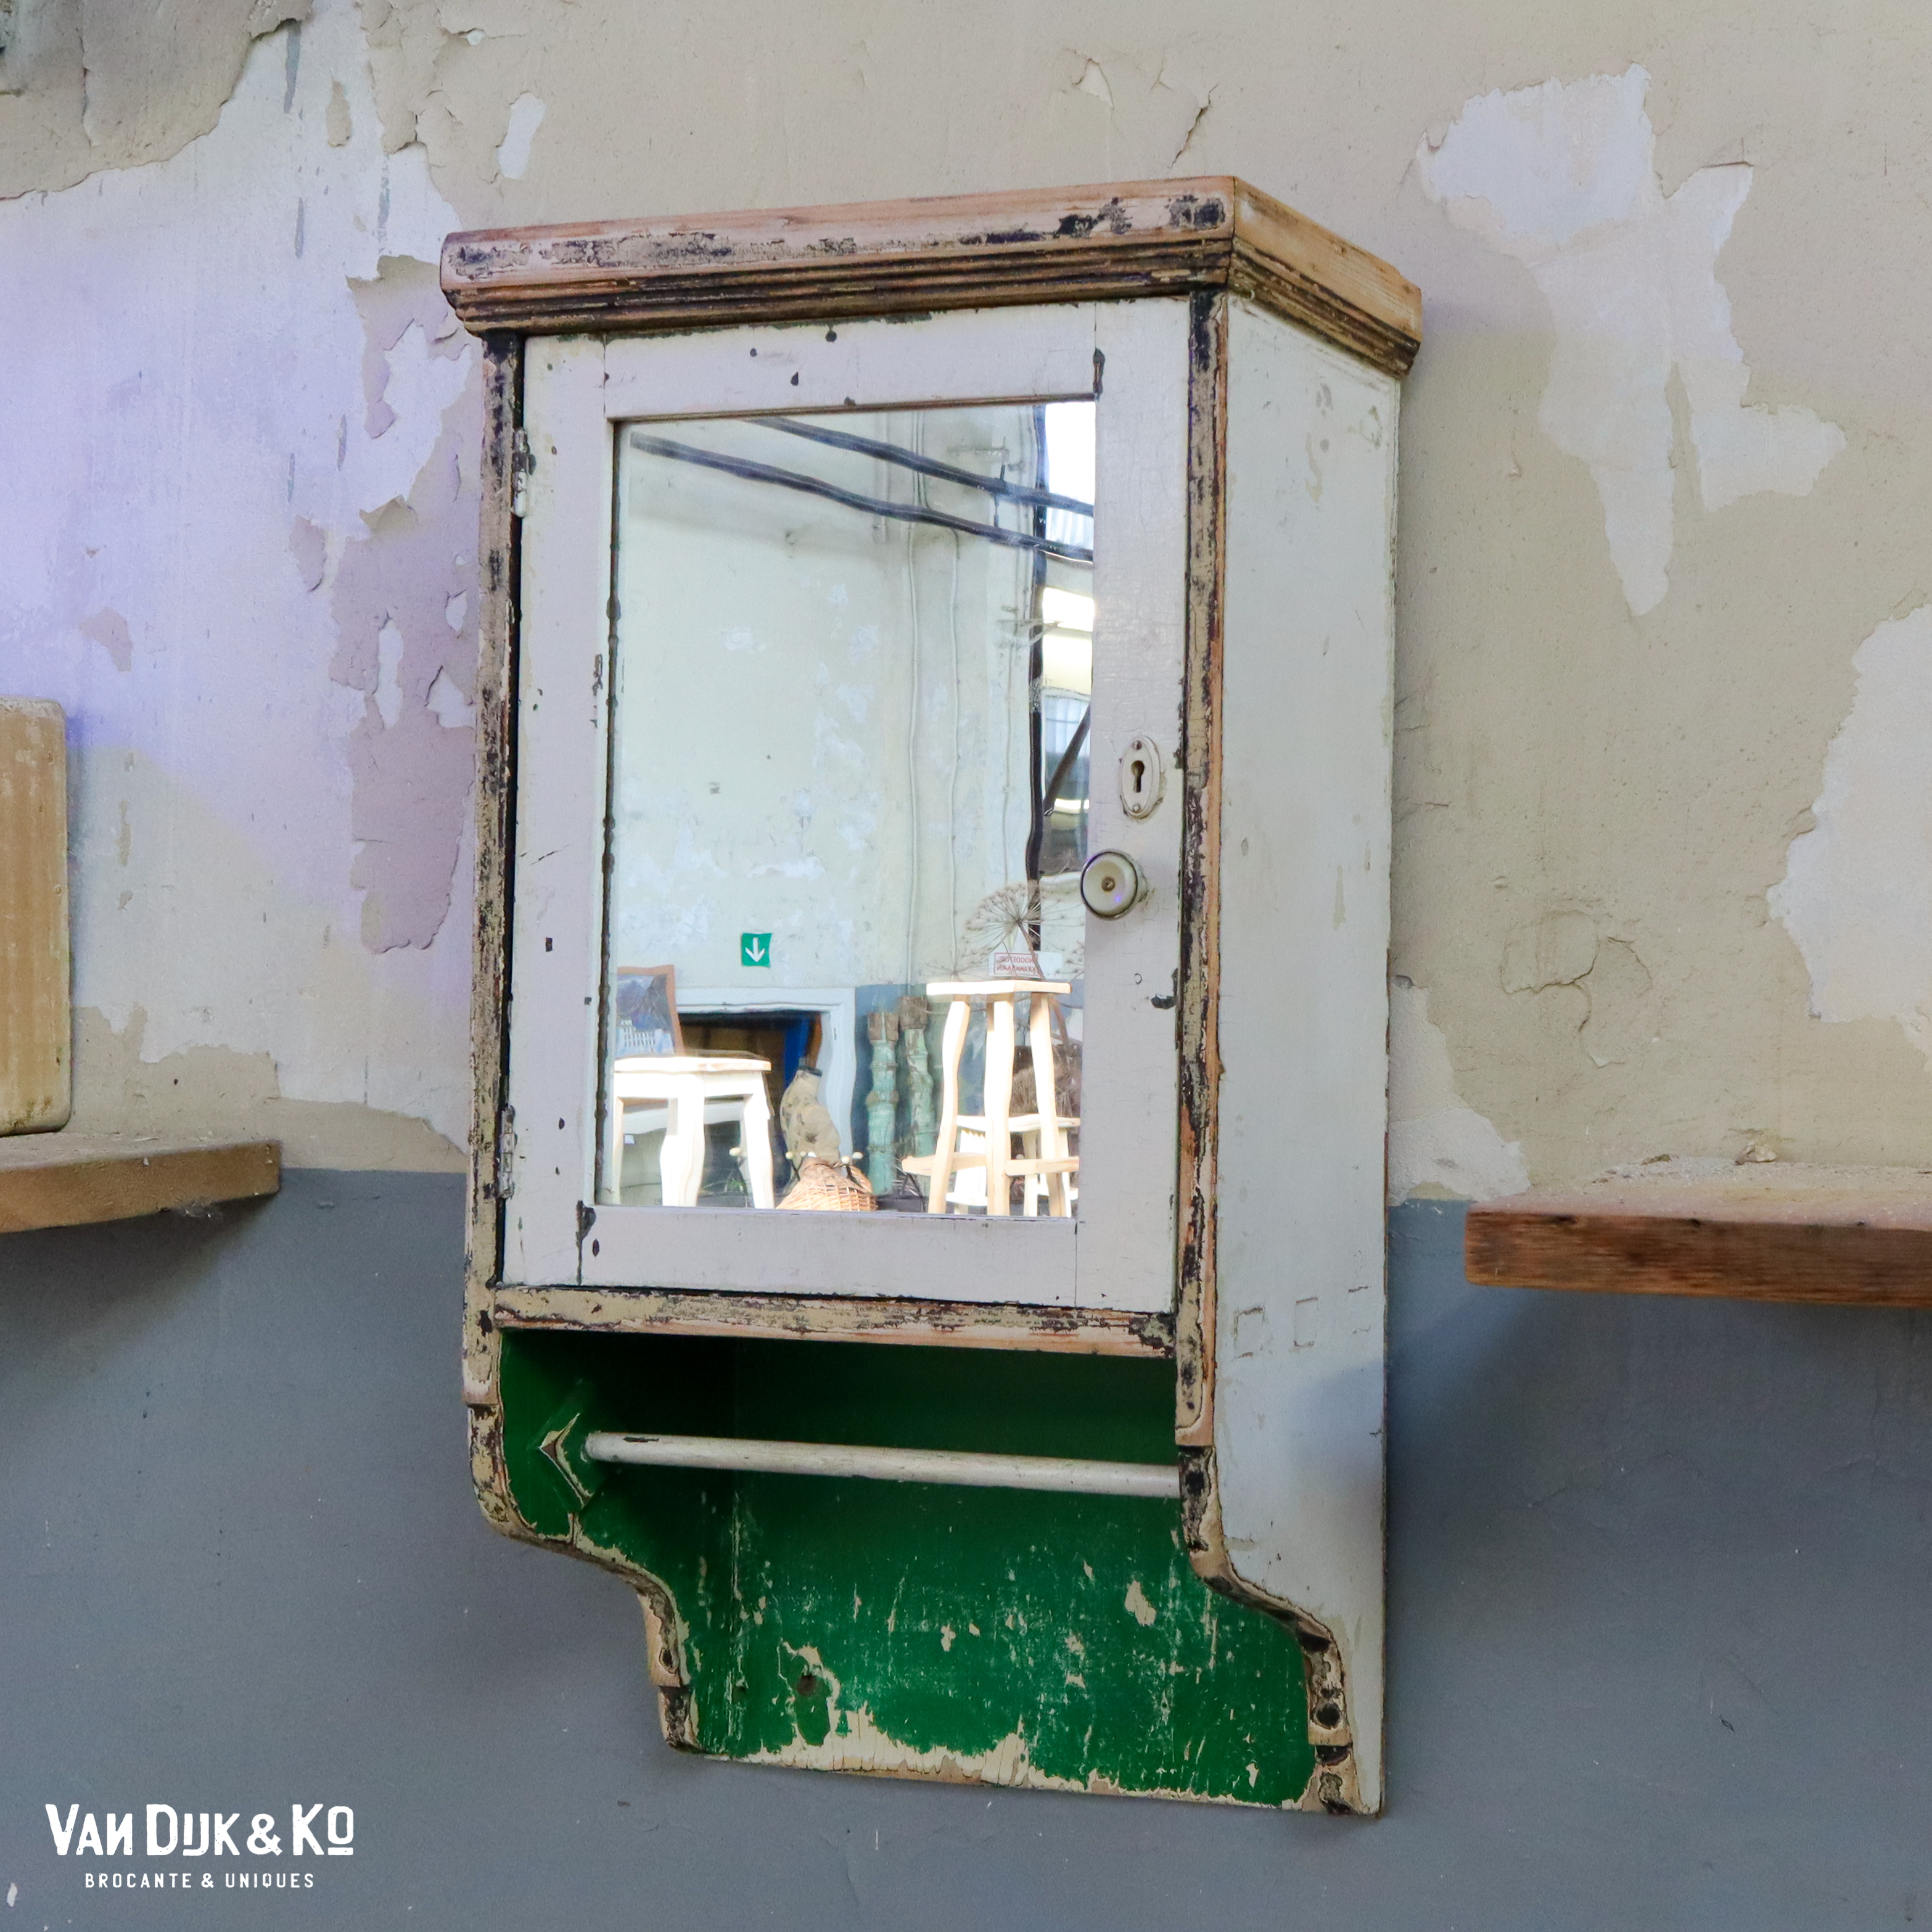 waterbestendig leerling daarna Brocante hangkastje met spiegel » Van Dijk & Ko